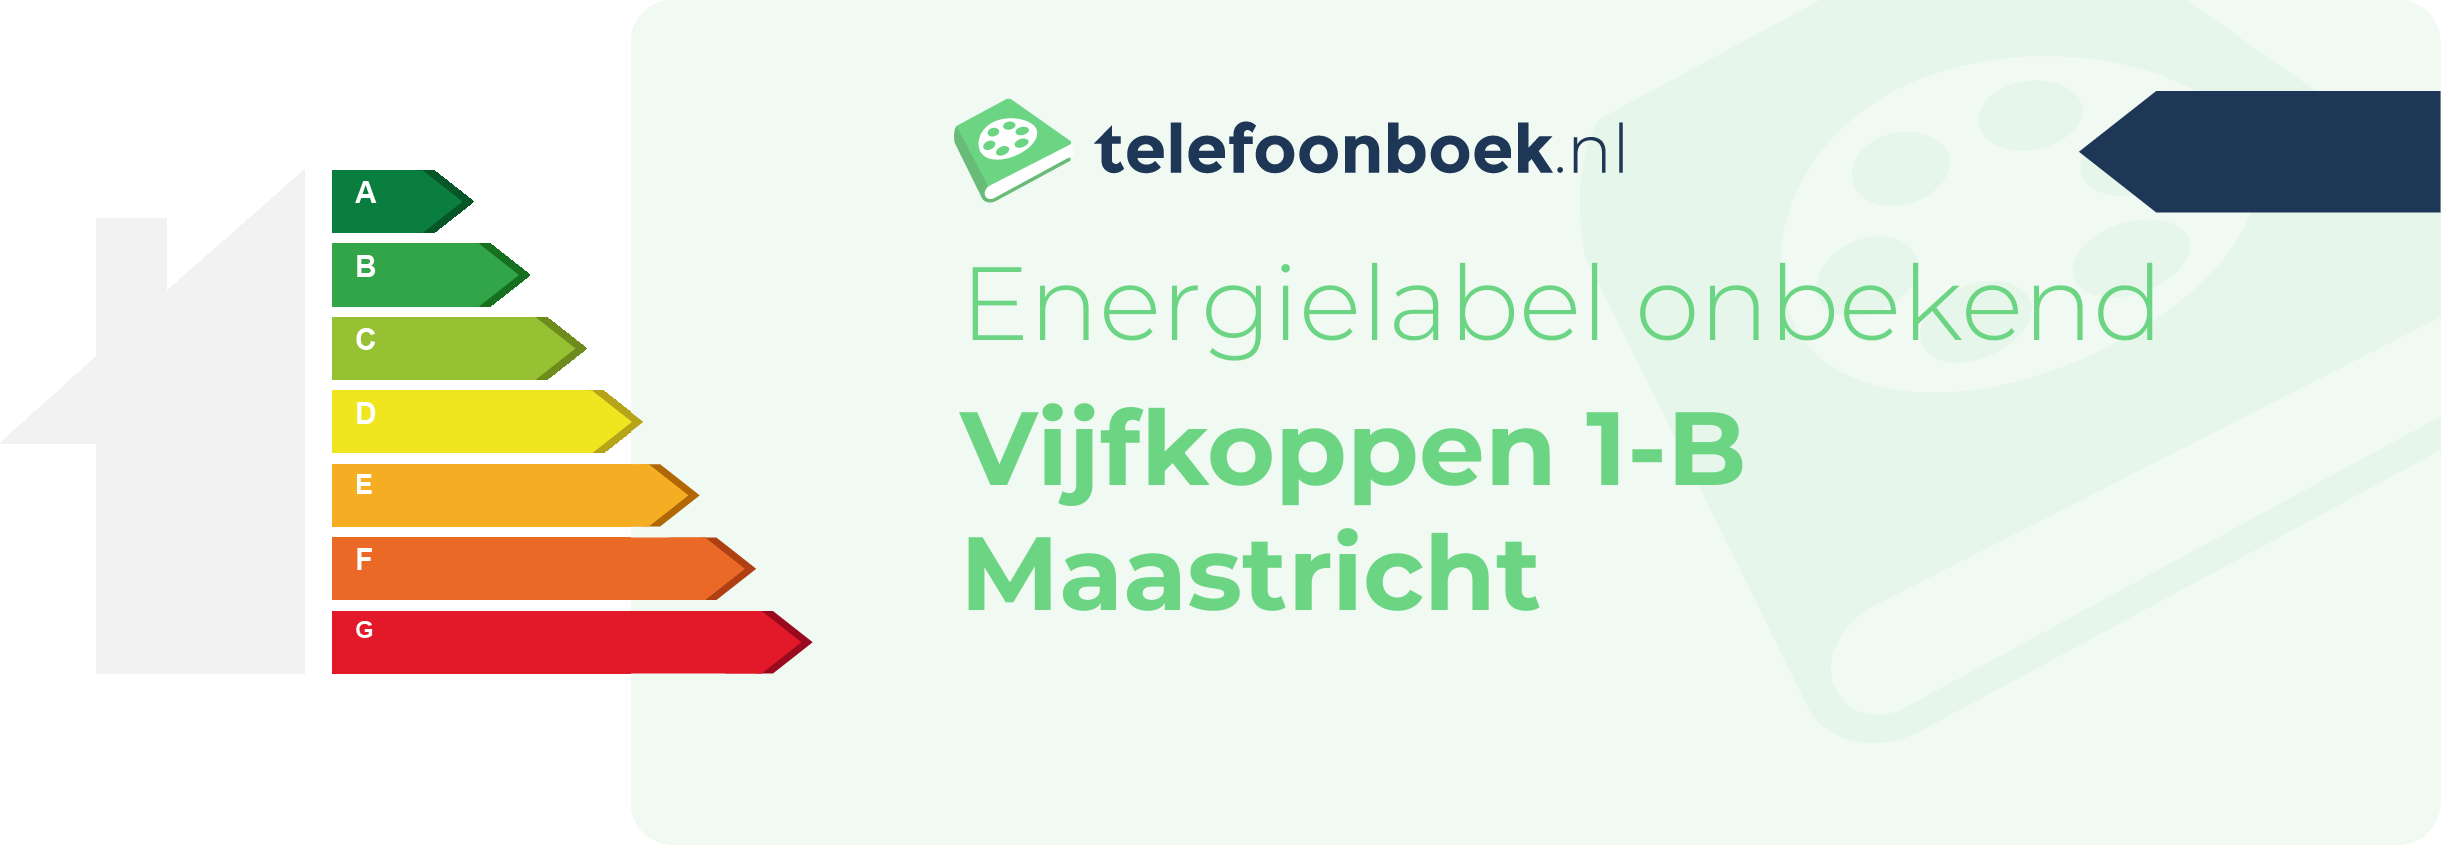 Energielabel Vijfkoppen 1-B Maastricht